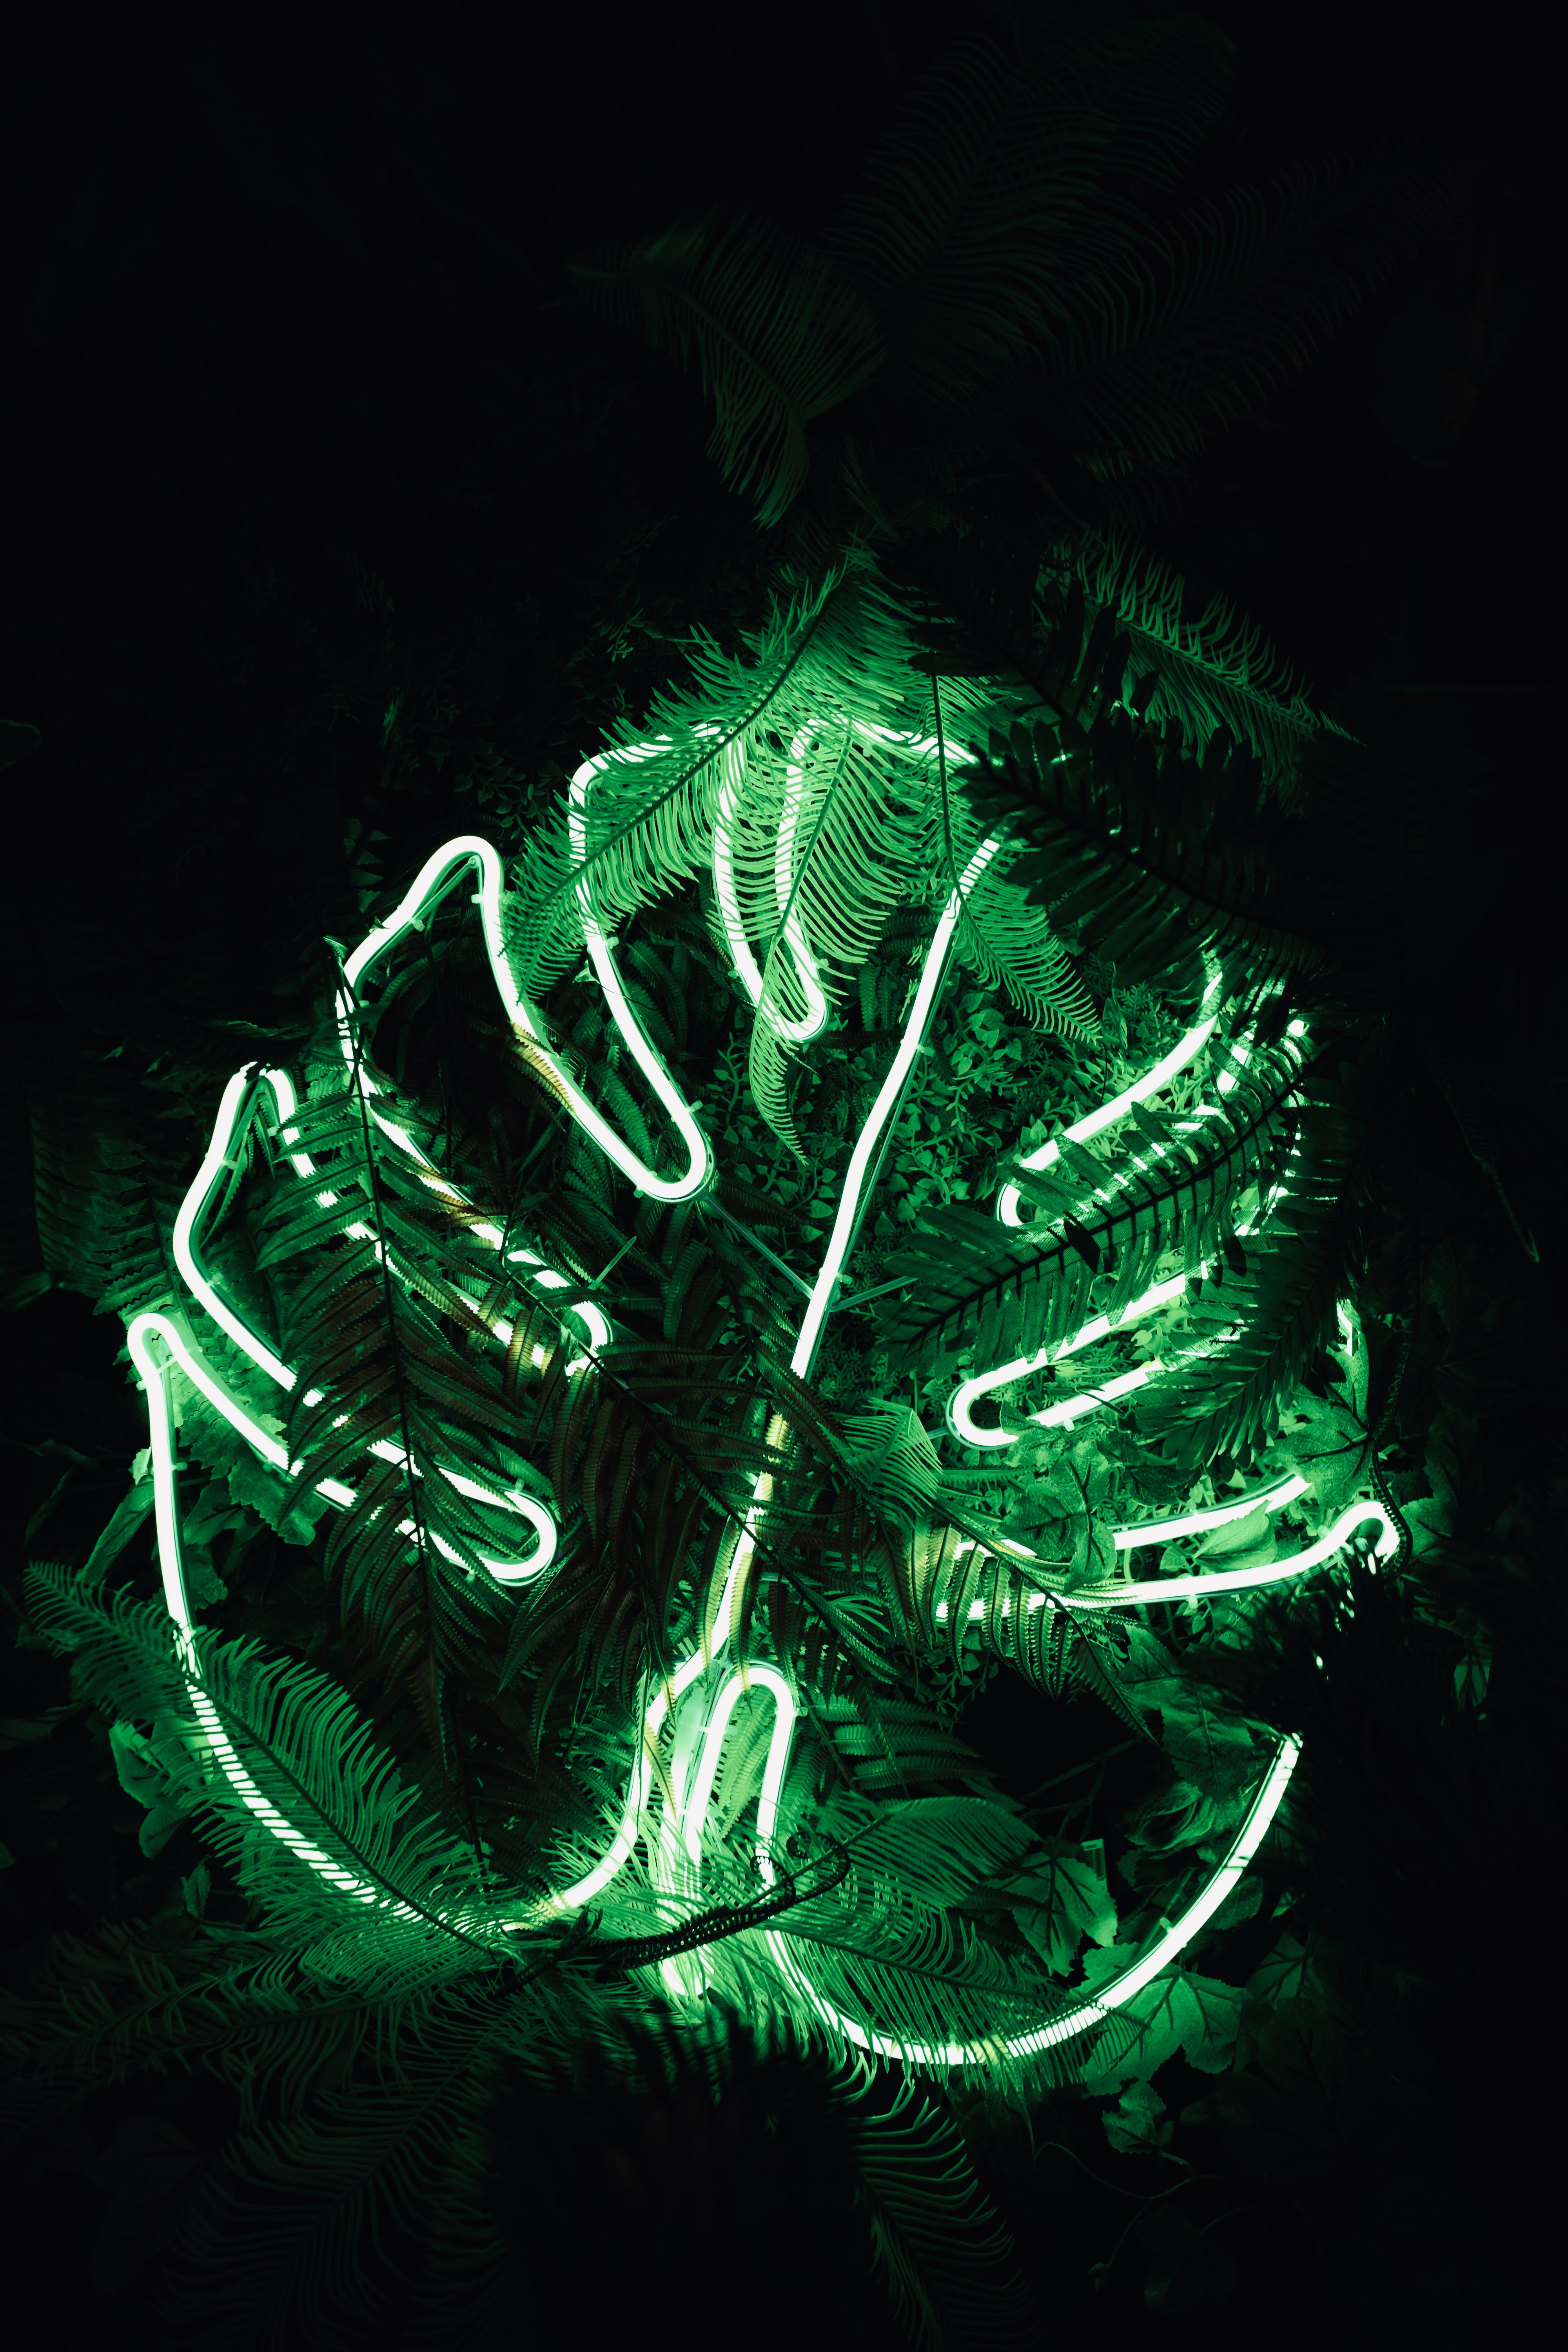 neon, fern, green, dark, shine, light, leaflet Image for desktop